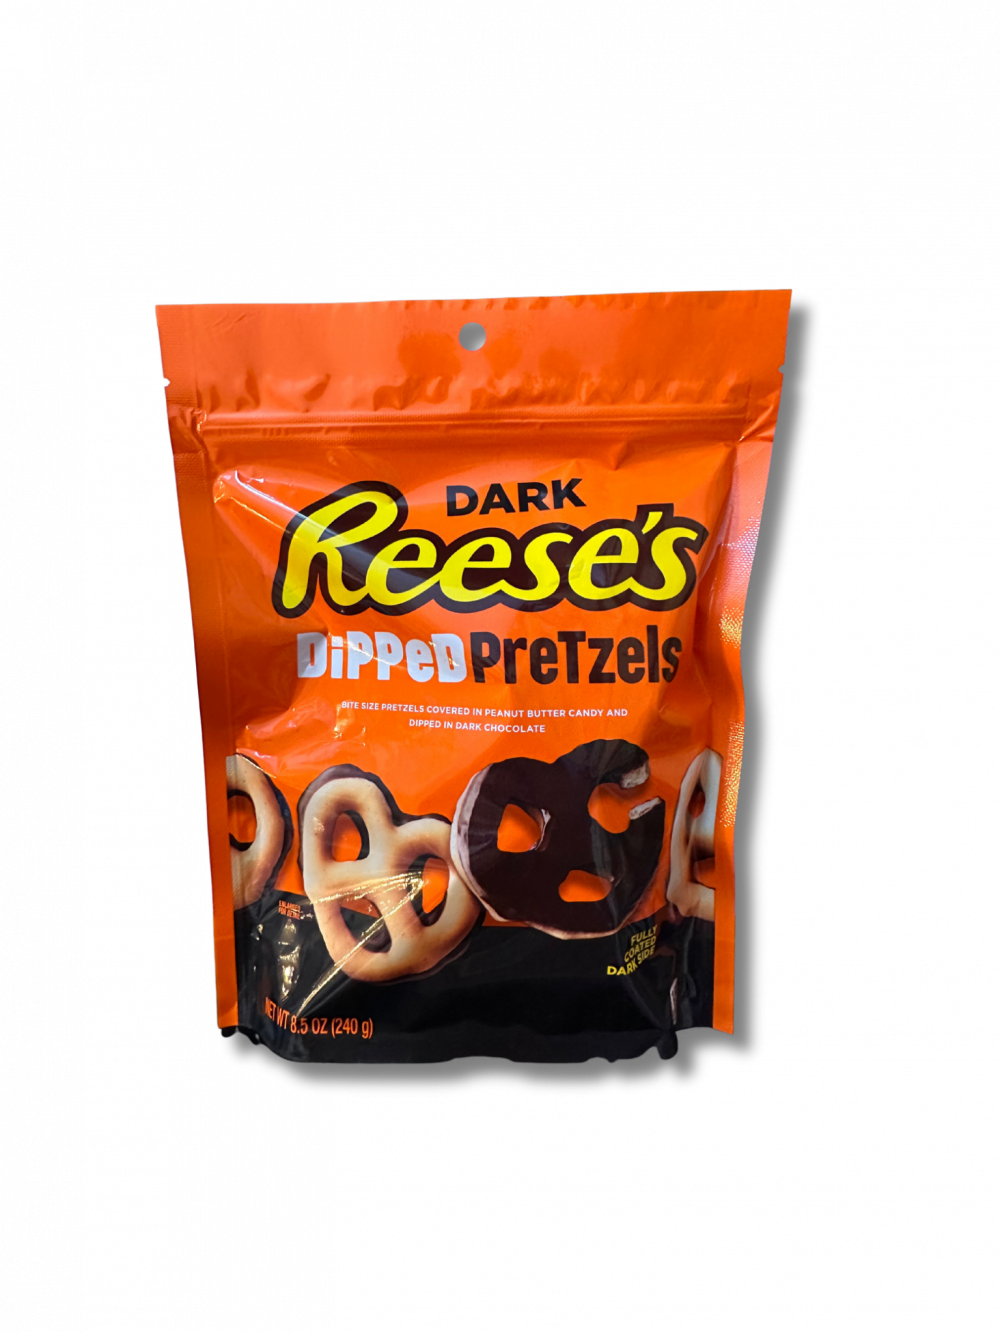 Reese’s Dipped Pretzels Dark ist ein Snack, der deine Geschmacksknospen zum Tanzen bringt. Salzige Brezeln, getaucht in dunkle Schokolade und mit einer Prise Reese's Erdnussbutter verfeinert, sorgen für ein unvergleichliches Geschmackserlebnis. […] - Breddas Hemp & Sweets Company Wuppertal